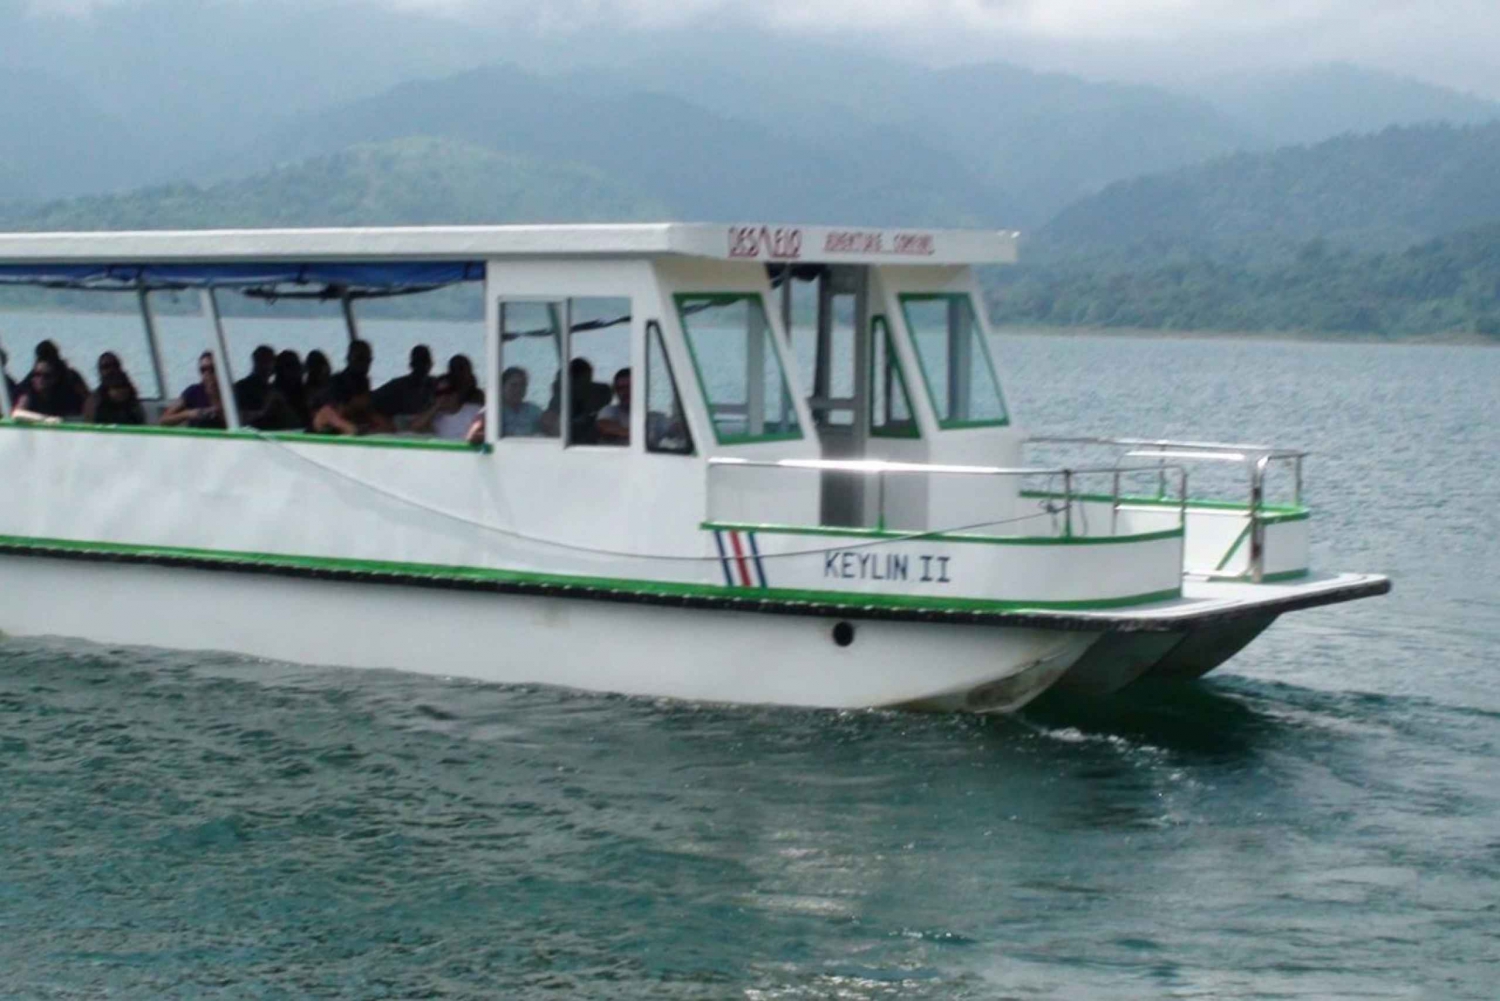 La Fortuna o Monteverde: trasferimento in barca di sola andata